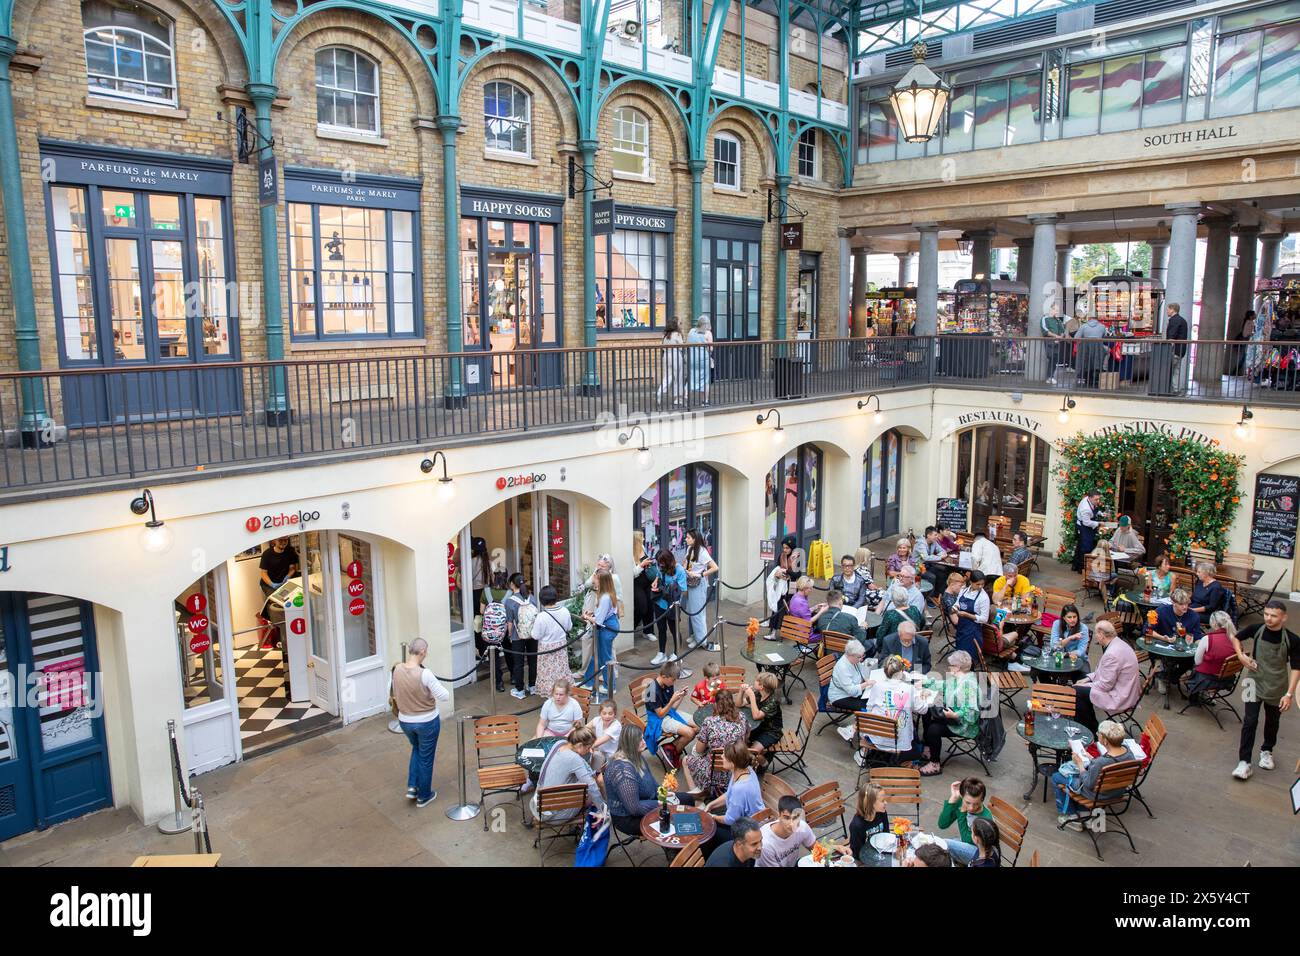 Covent Garden Market, les gens appréciant la nourriture et les boissons dans un café près du hall sud, Londres West End, Angleterre, Royaume-Uni, 2023 Banque D'Images